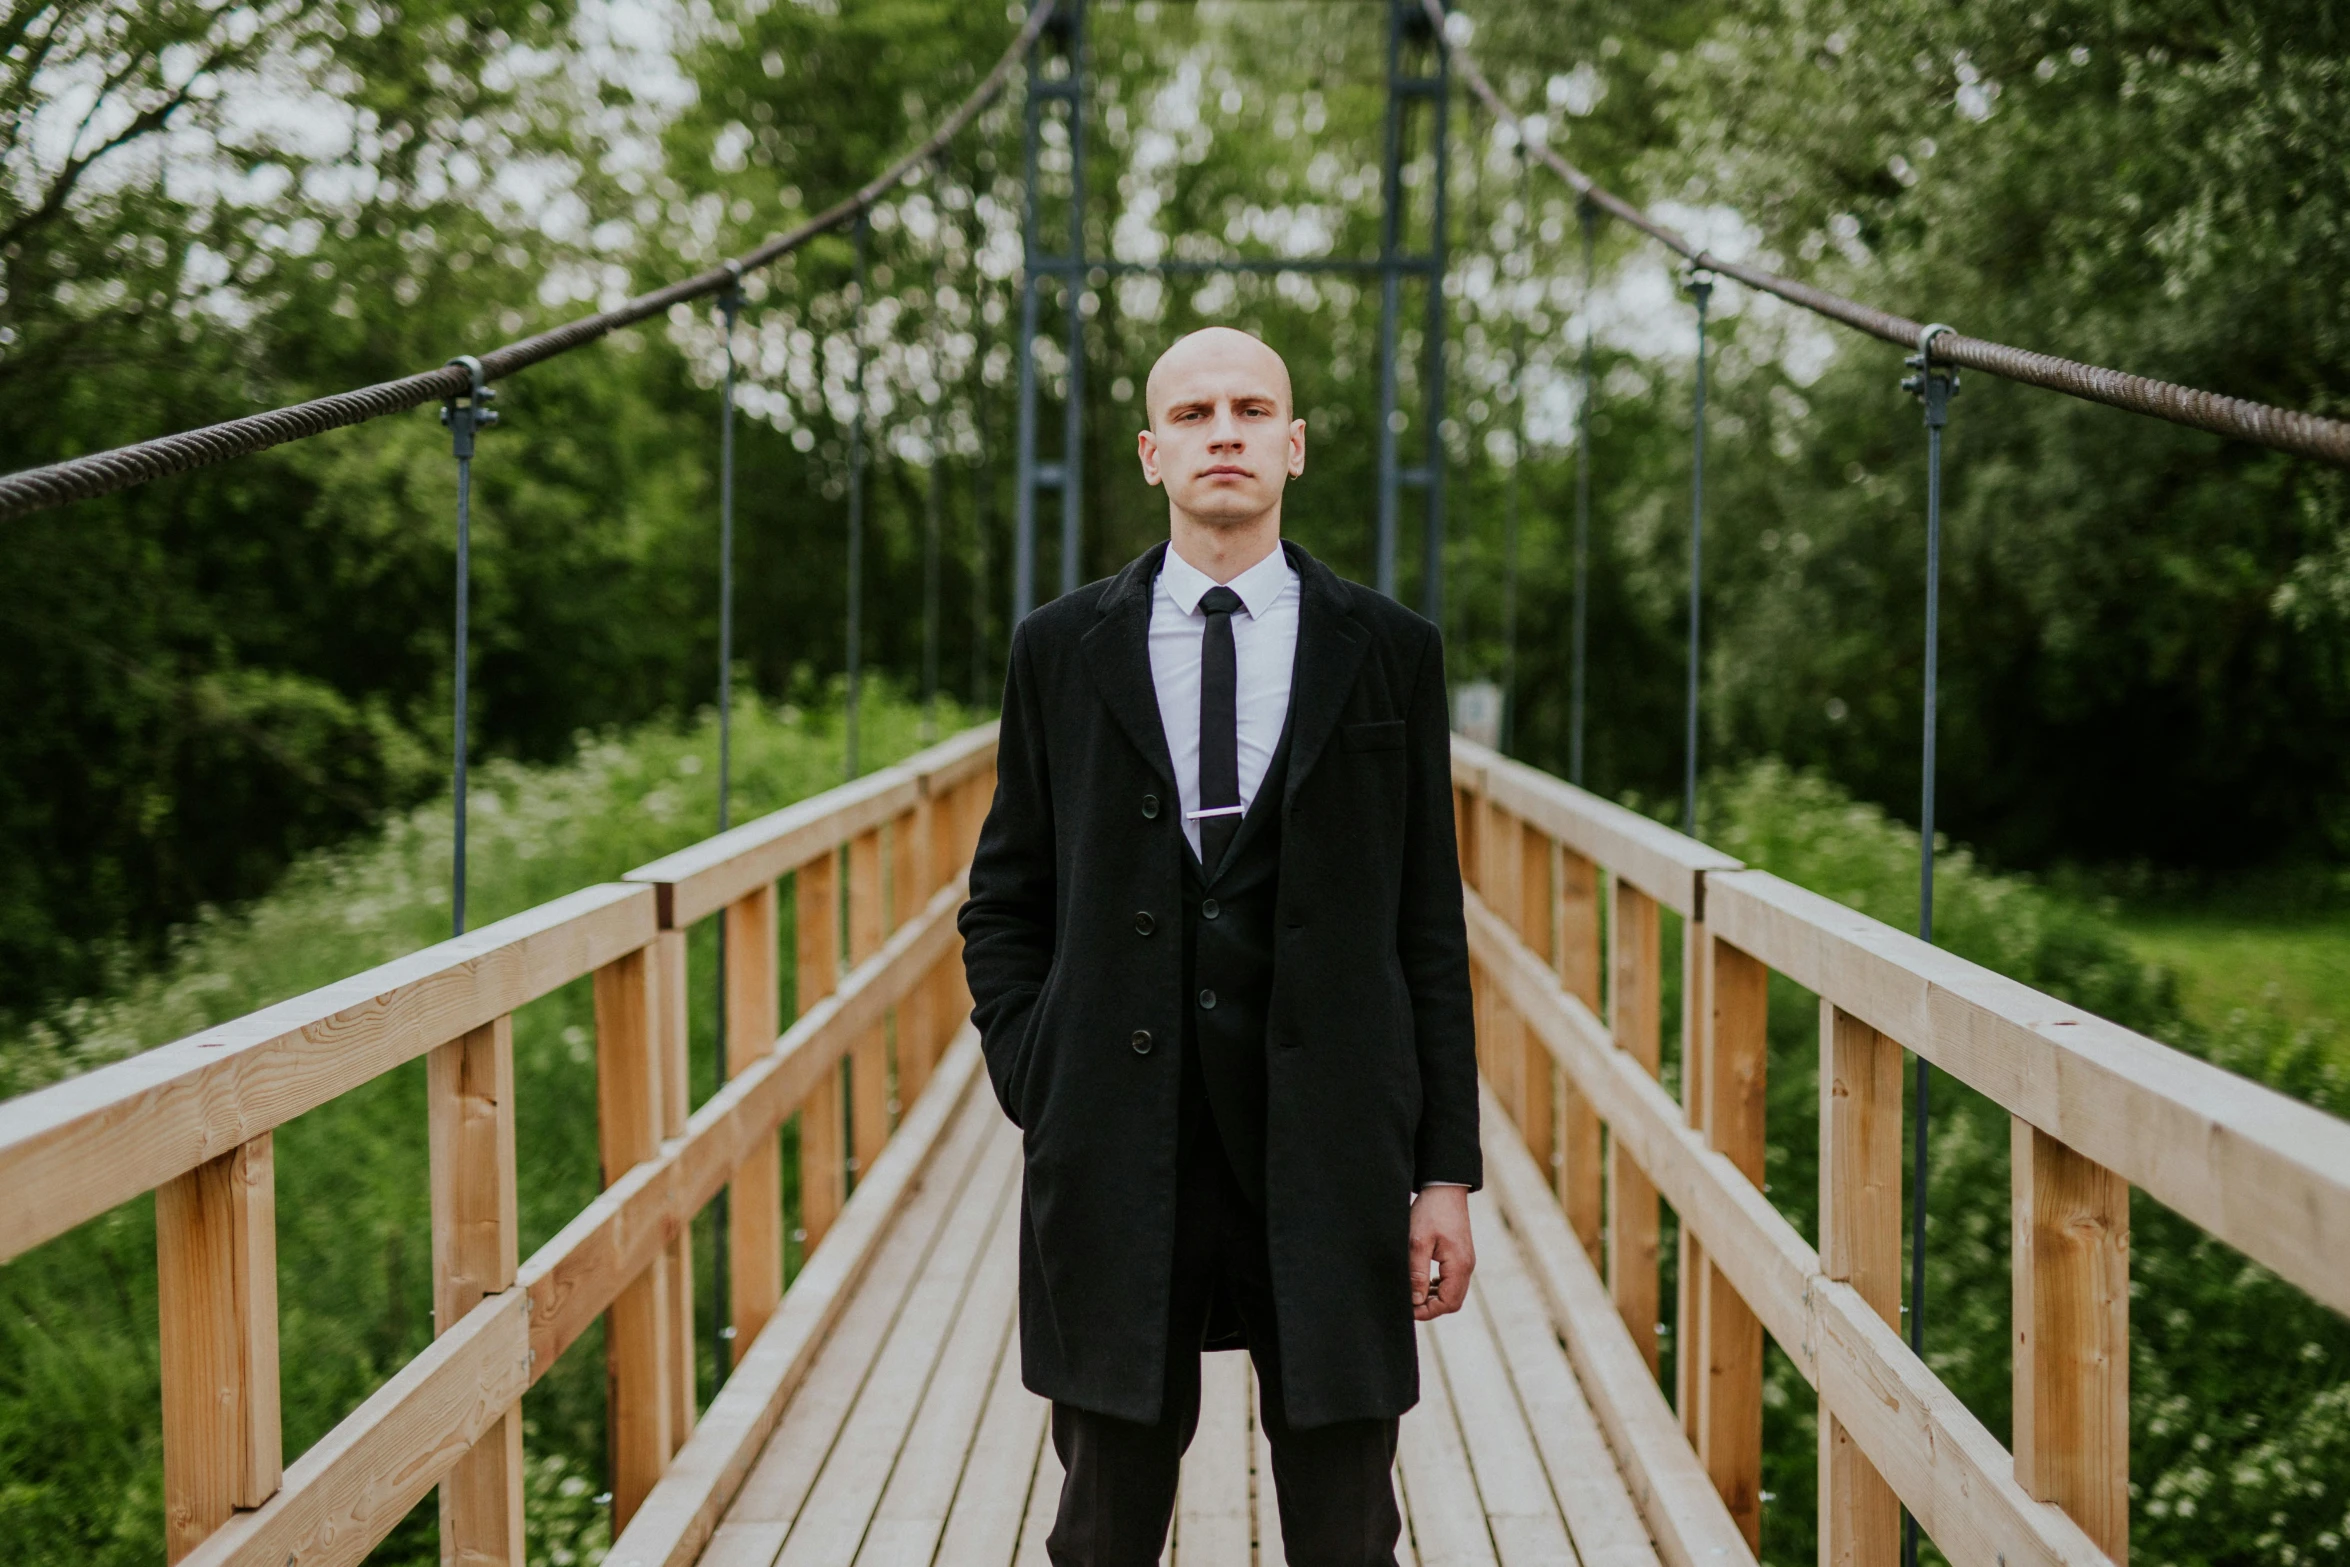 a man in black coat and tie standing on wooden bridge